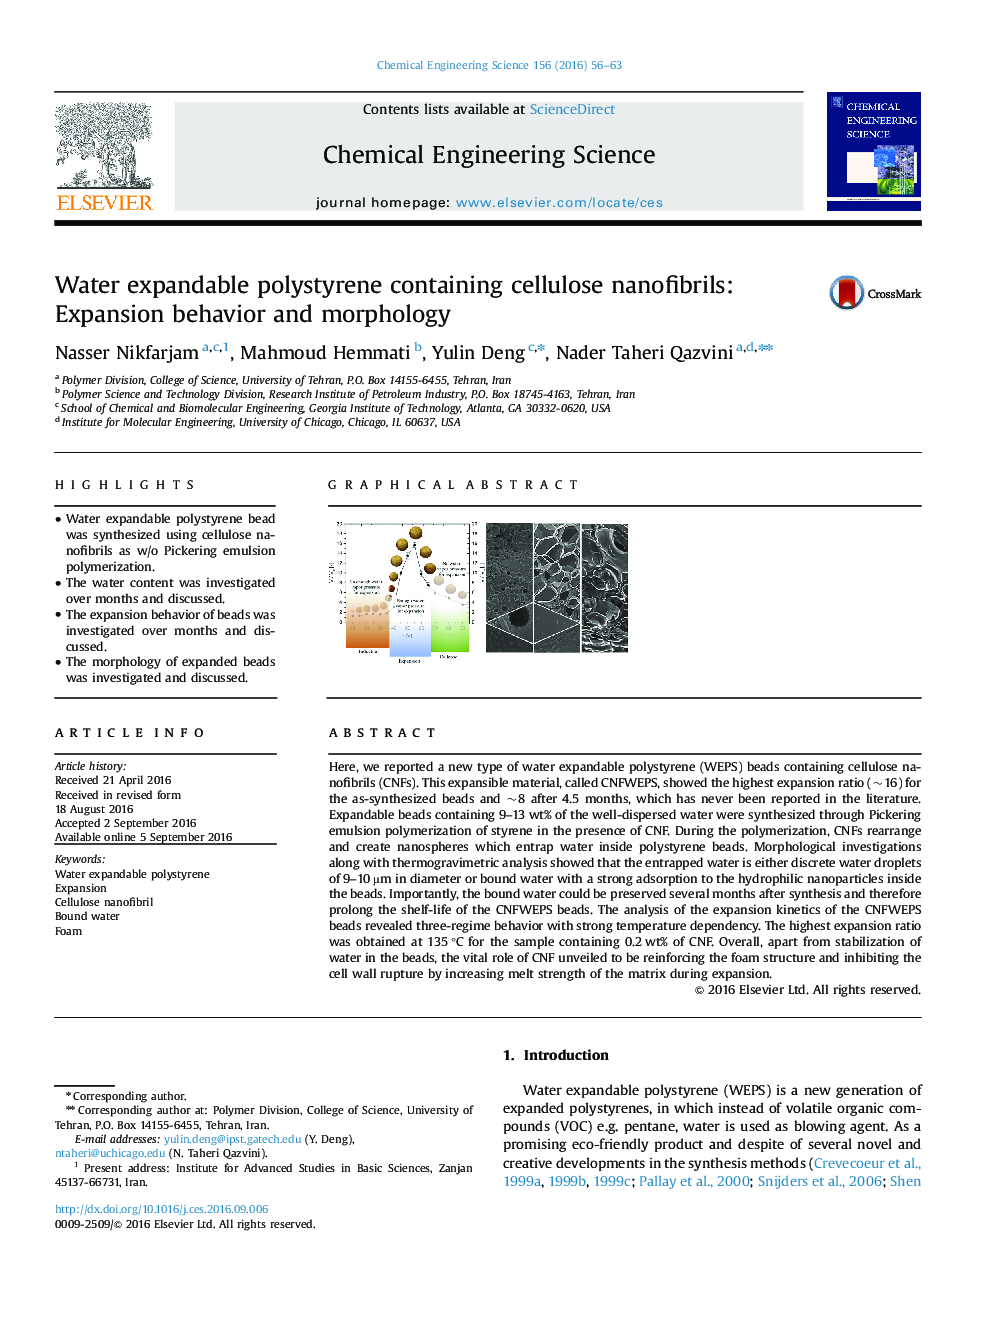 پلی استایرن قابل انعطاف پذیر شامل نانوفیلترهای سلولز: رفتار گسترش و مورفولوژی 